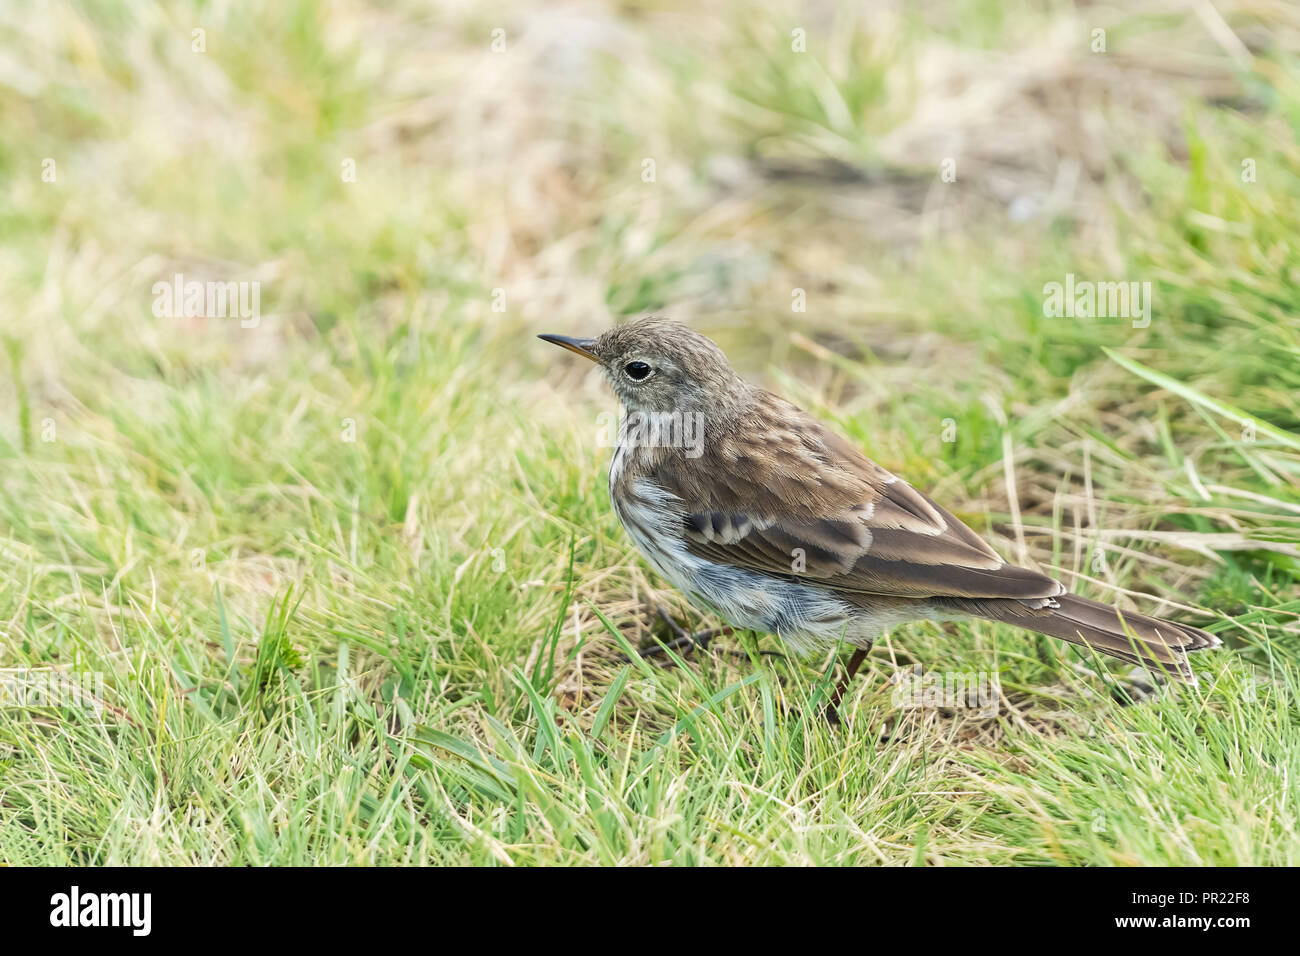 Little brown bird walk on the green grass Stock Photo